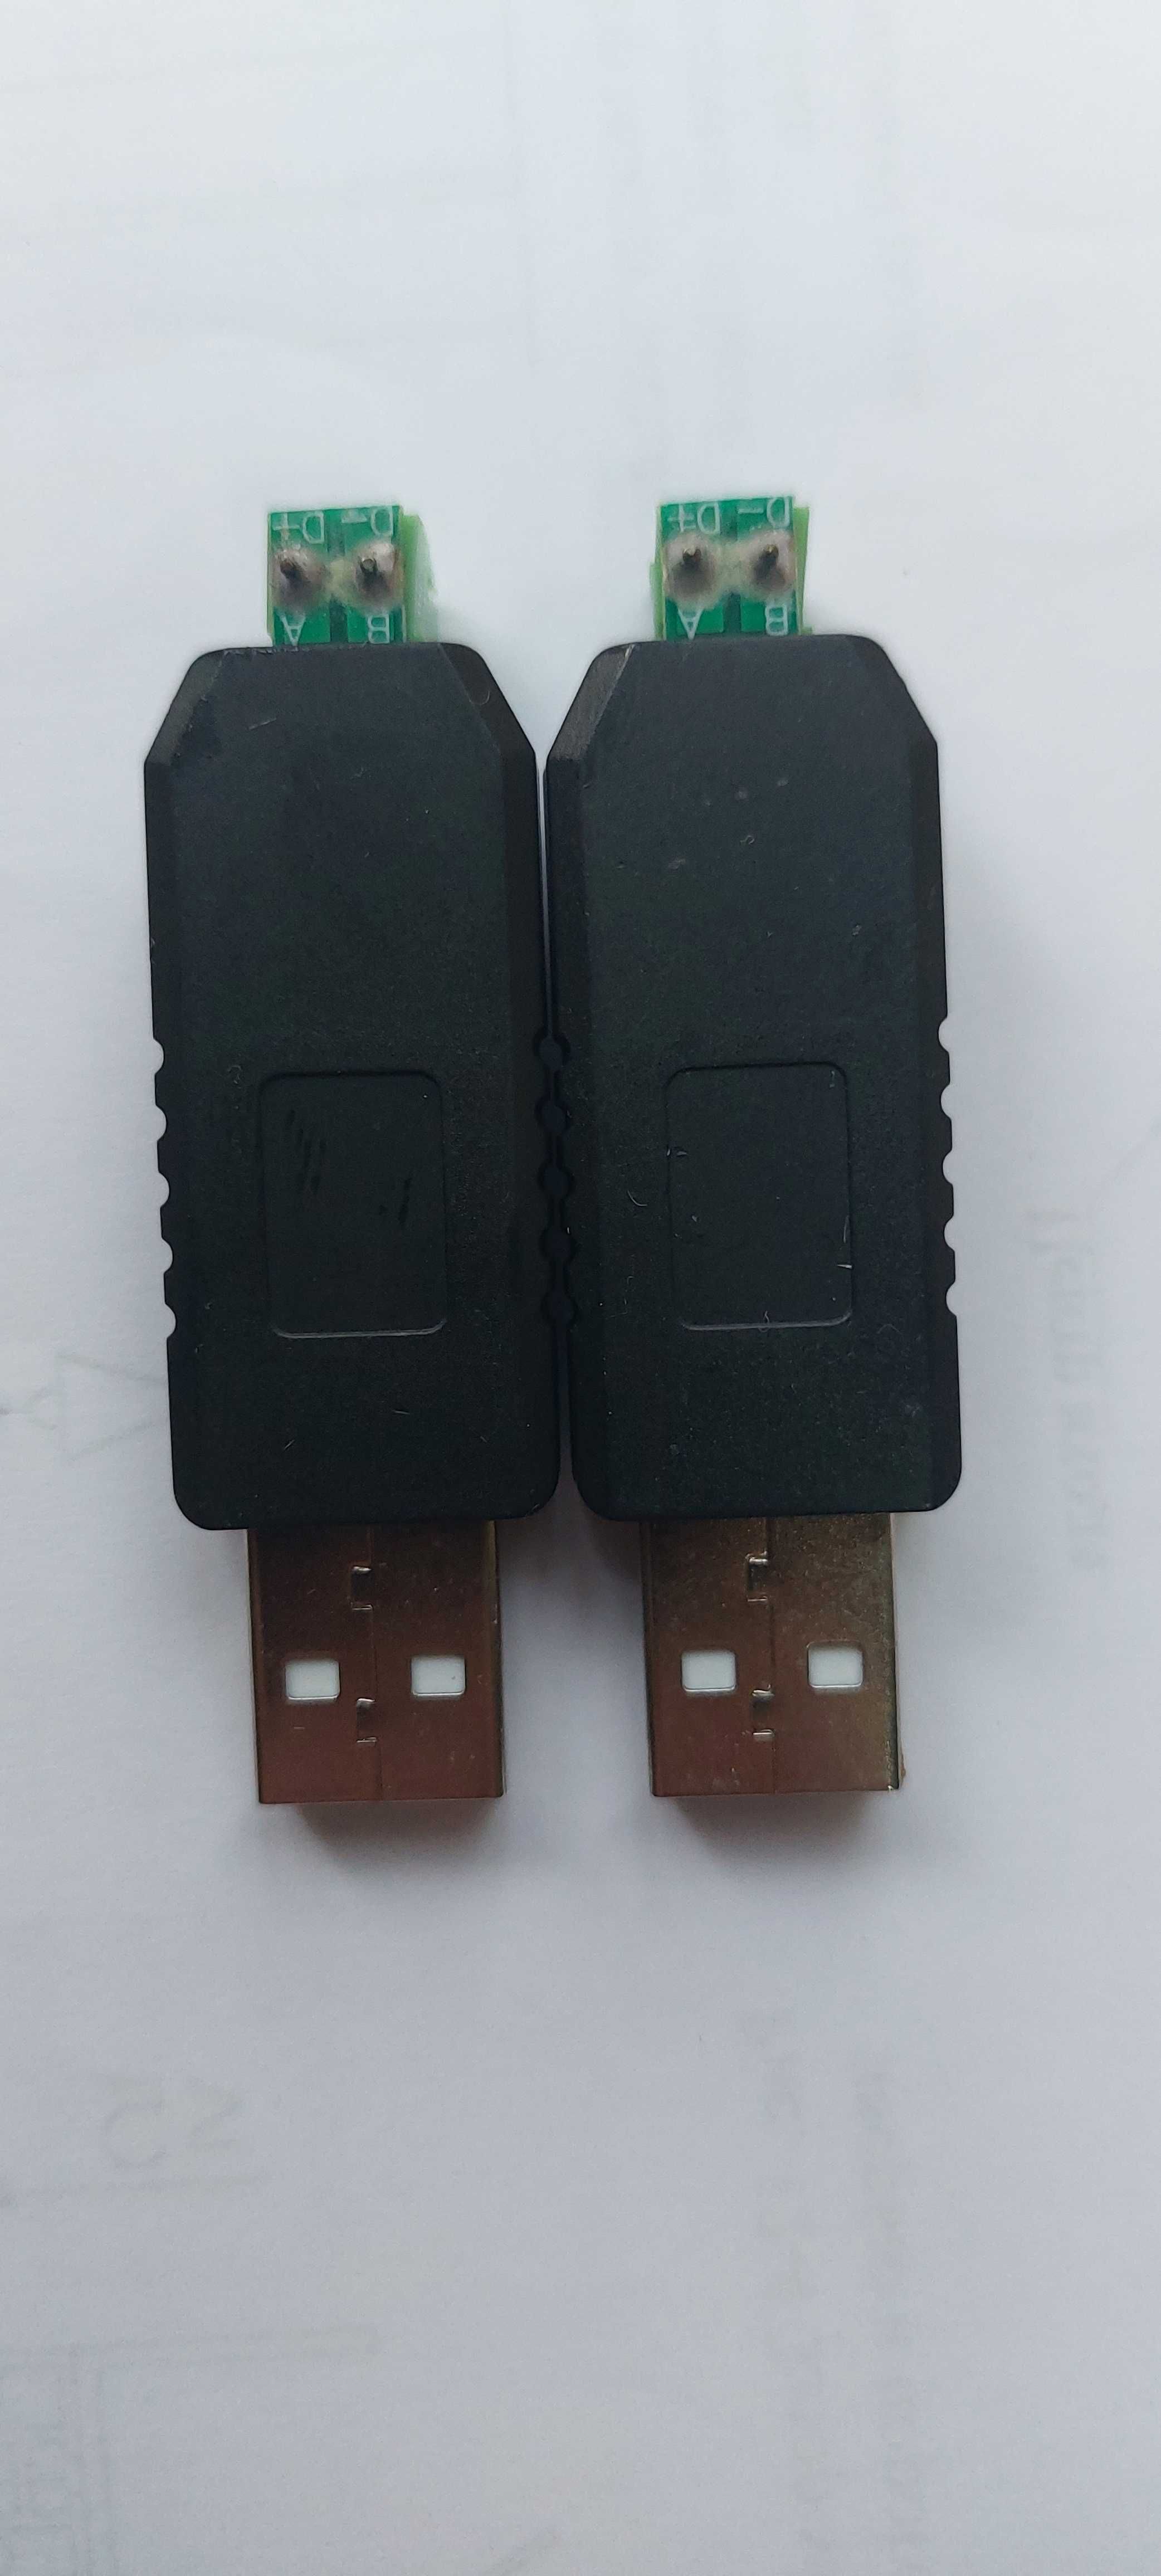 Продаются преобразователи USB-RS485